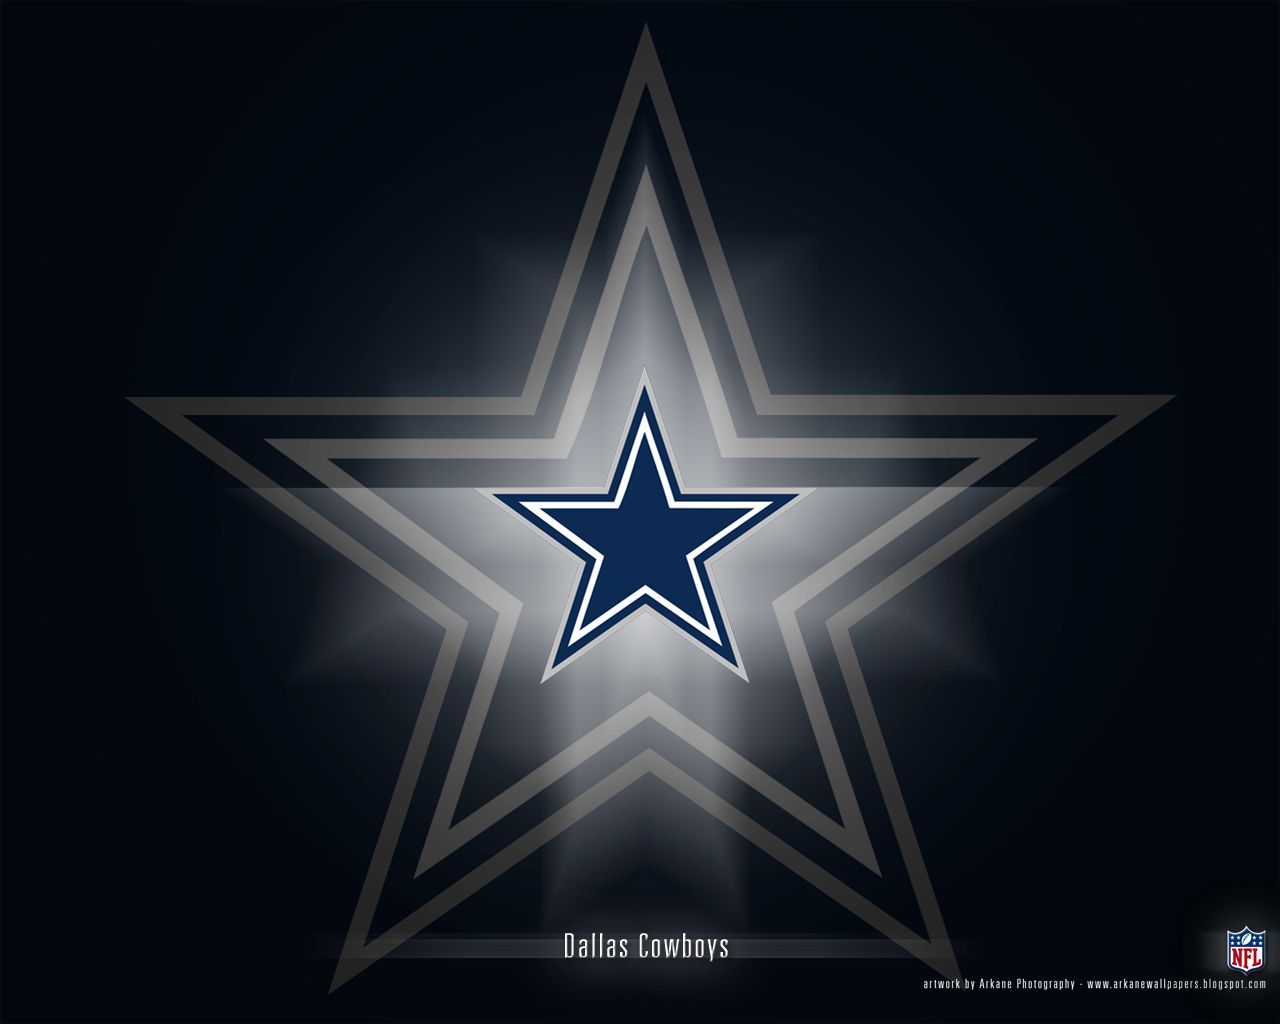 Dallas Cowboys - Dallas Cowboys Wallpaper 9173313 - Fanpop